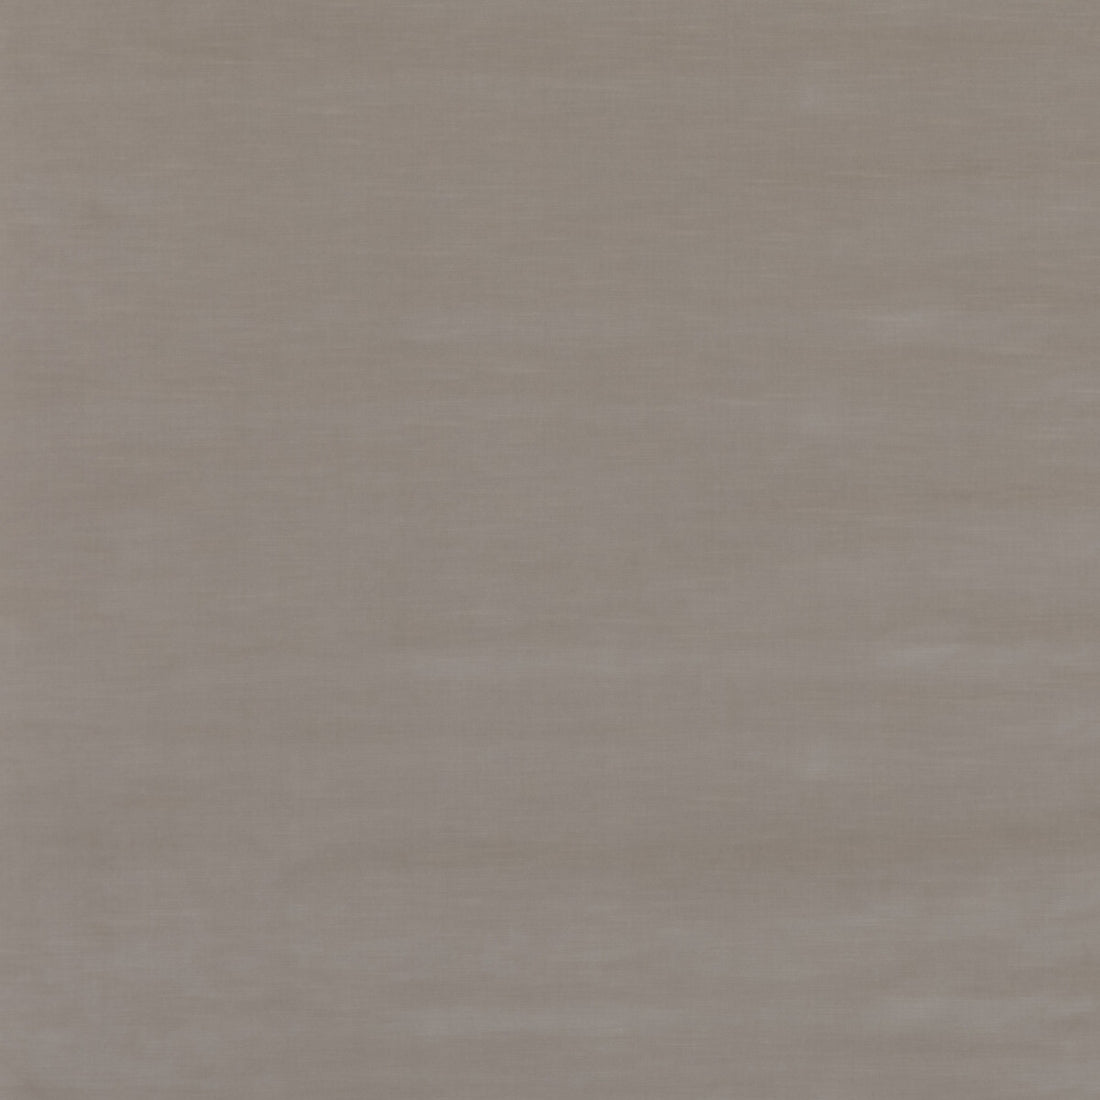 Quintessential Velvet fabric in flax color - pattern ED85359.113.0 - by Threads in the Quintessential Velvet collection